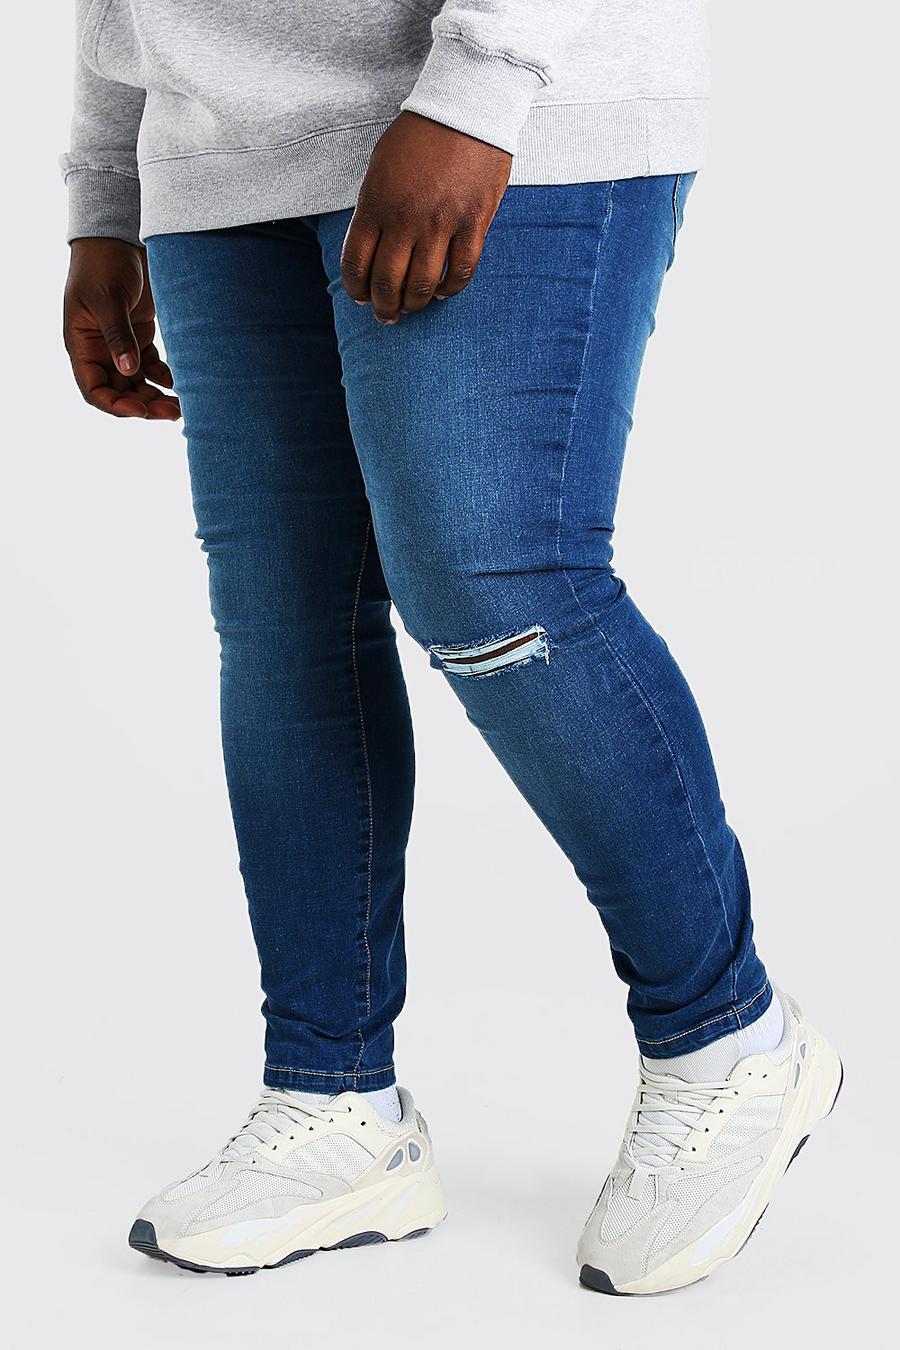 כחול ביניים מכנסי ג'ינס סופר סקיני עם ברך קרועה לגברים גדולים וגבוהים image number 1